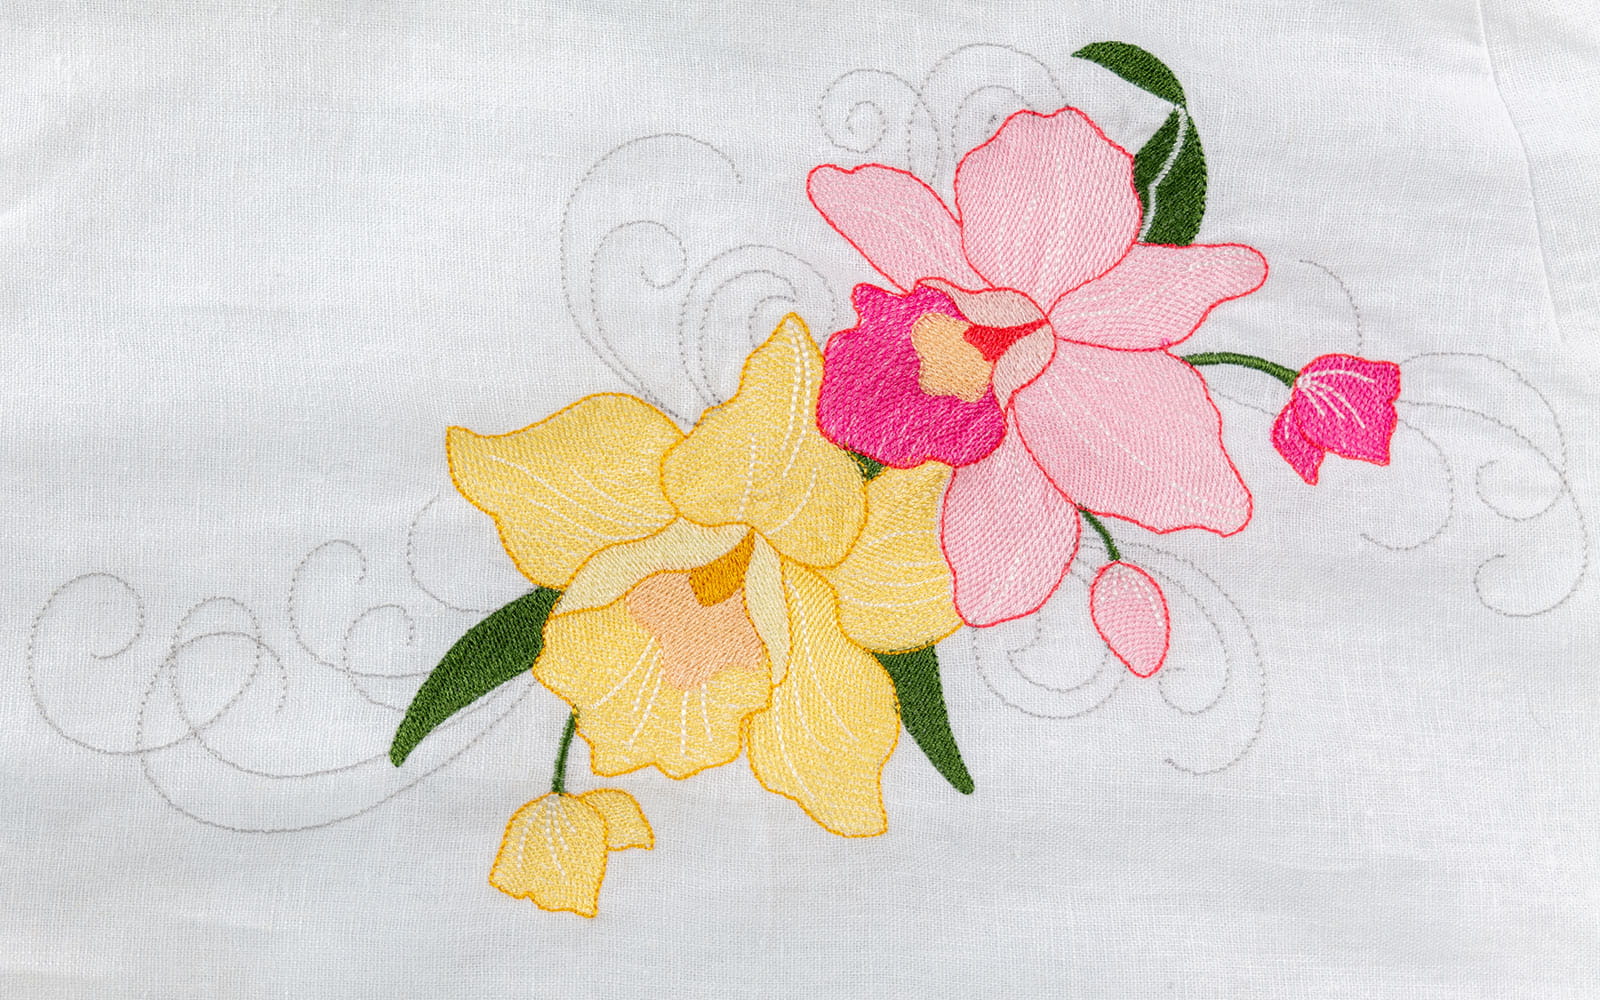 gros plan d'une orchidée brodée rose et jaune sur une robe blanche